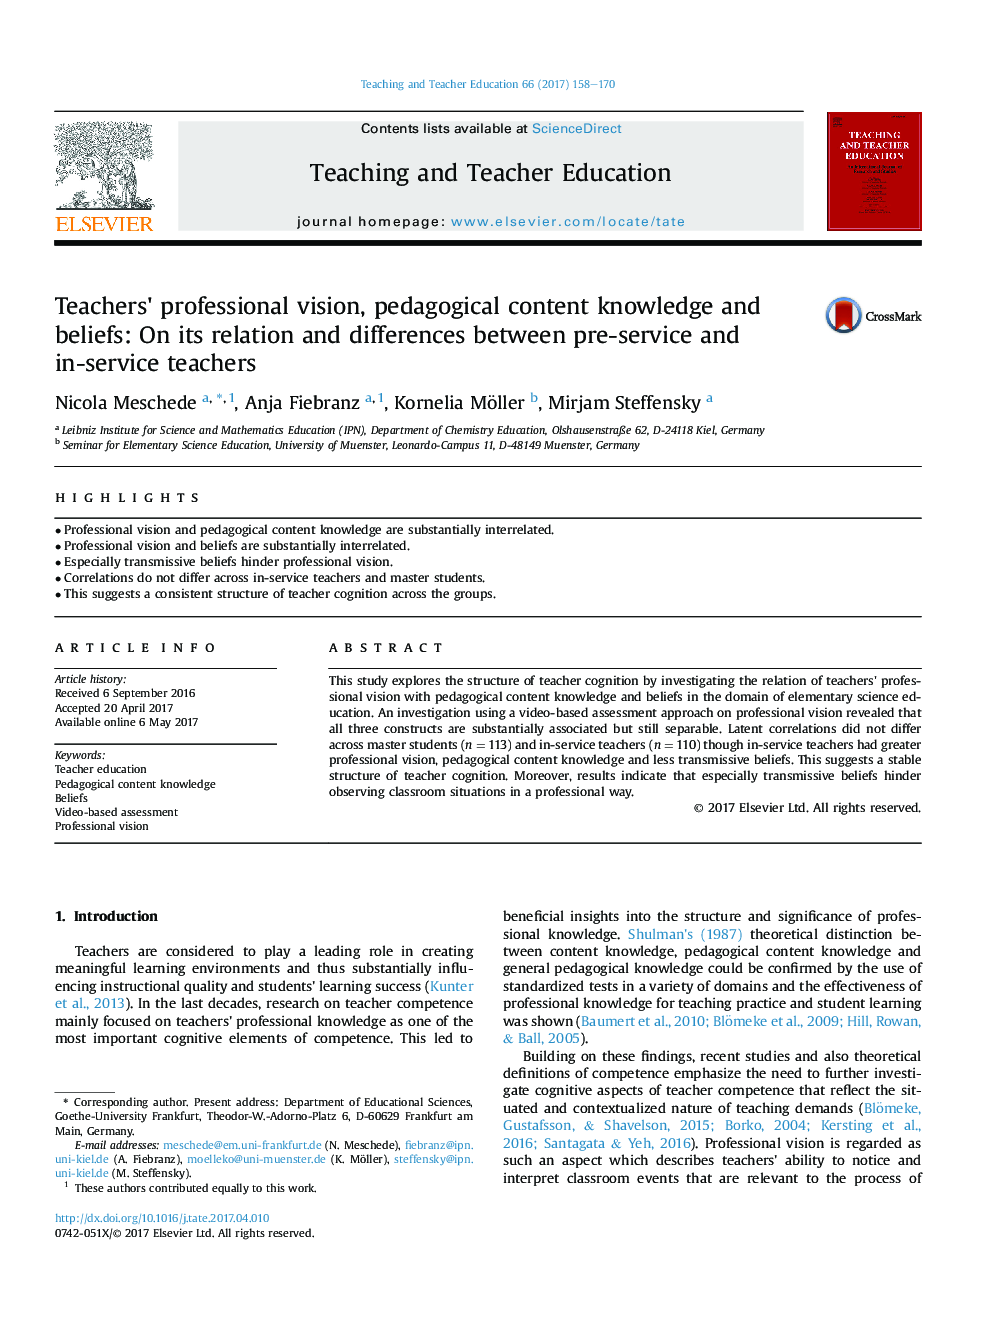 دیدگاه حرفه ای معلمان، دانش و باورهای محتوائی آموزشی: در رابطه و تفاوت های بین معلمان پیش دبستان و معلمان 